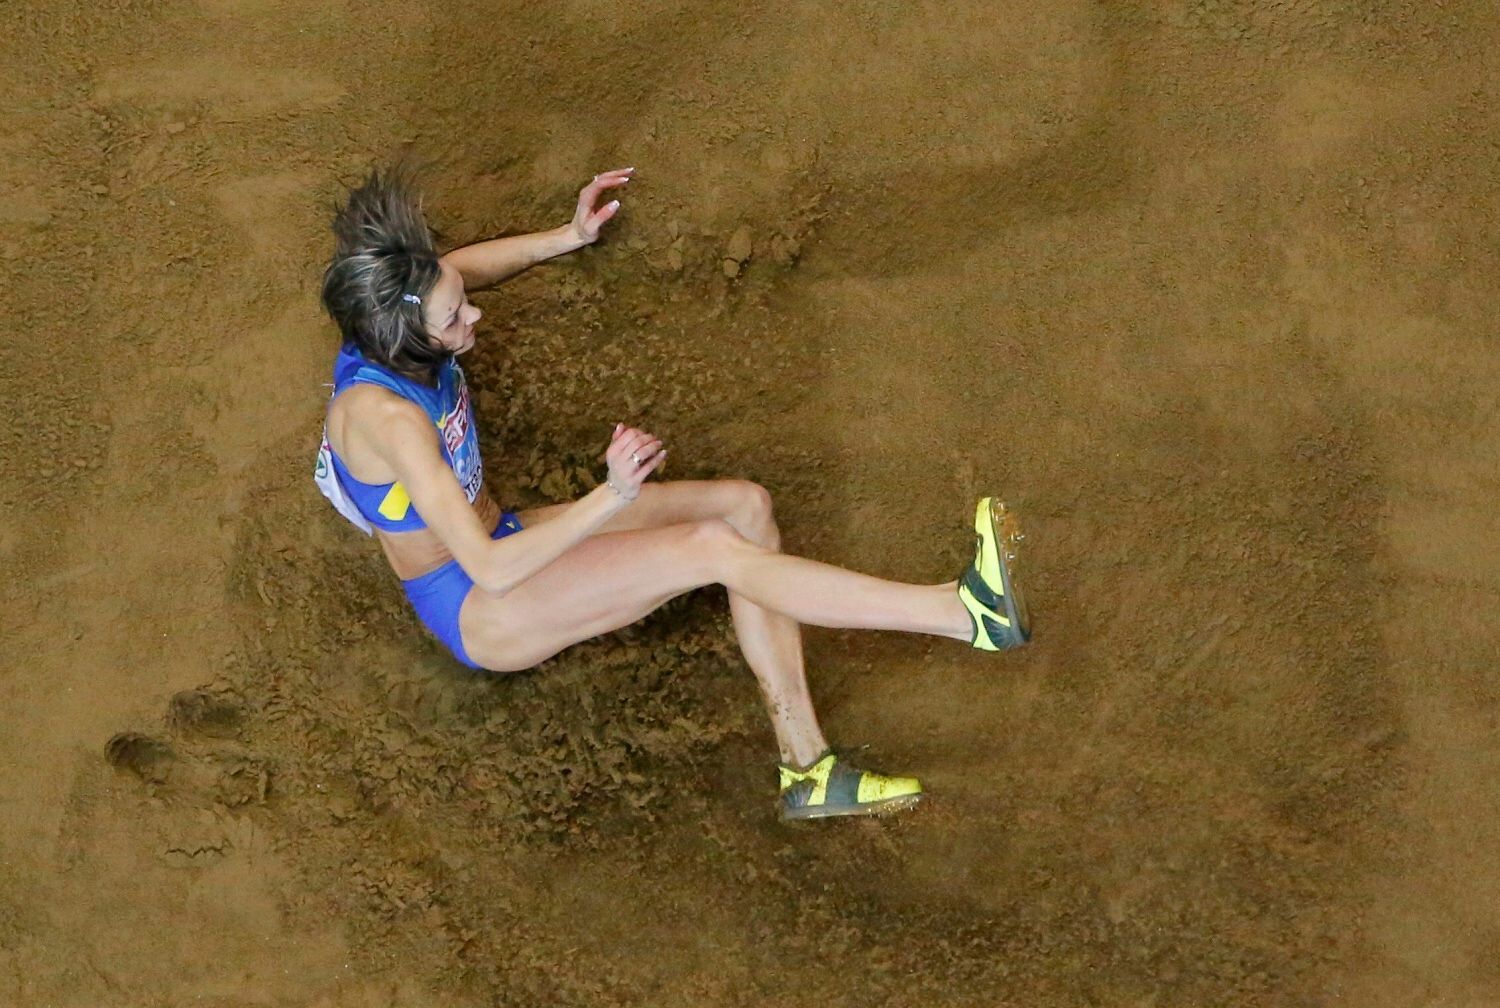 ME v halové atletice 2013, trojskok: Olha Saladuhová